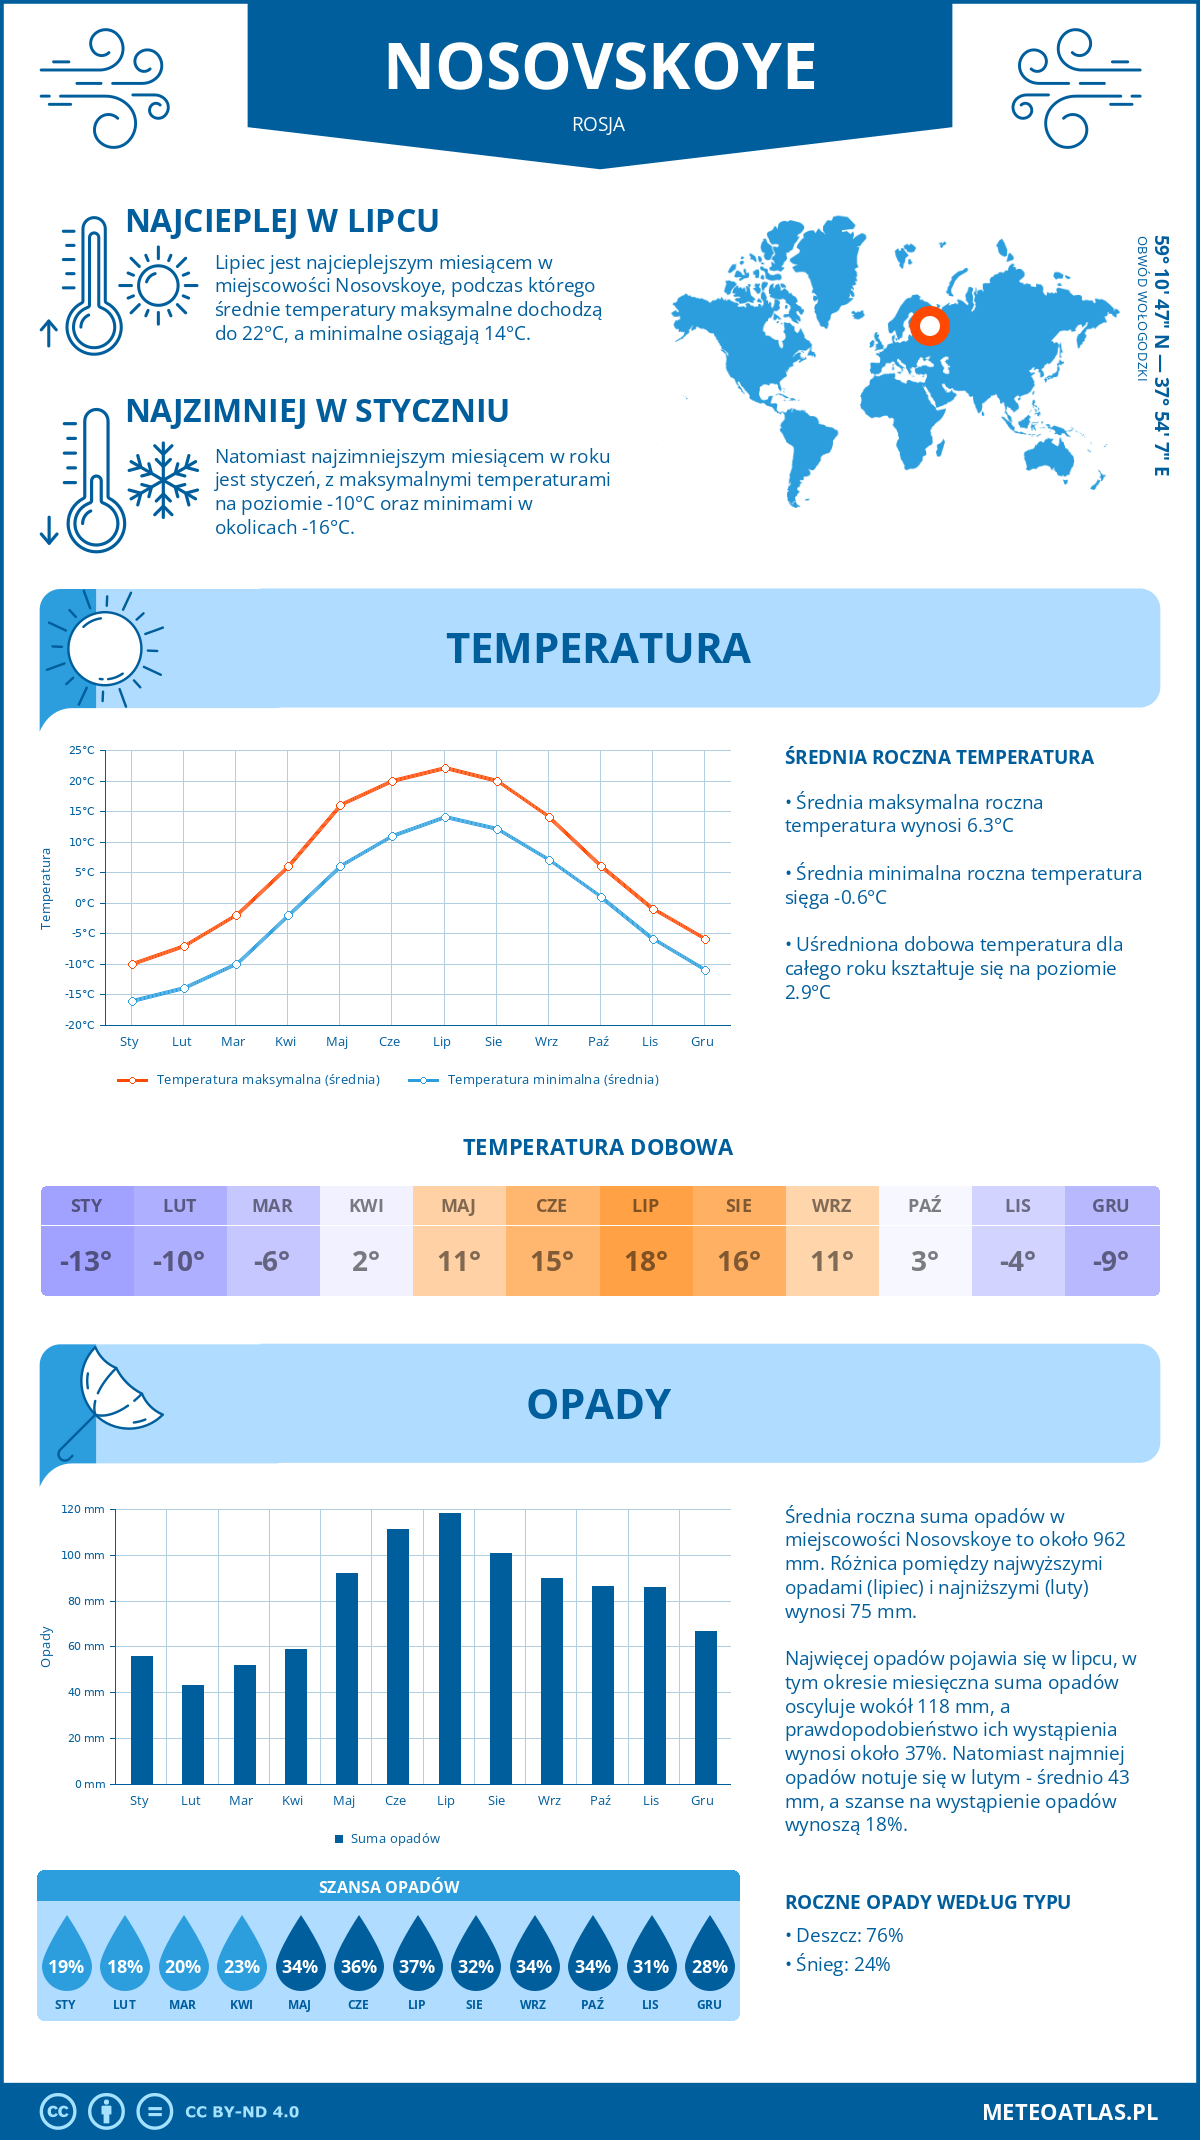 Pogoda Nosovskoye (Rosja). Temperatura oraz opady.